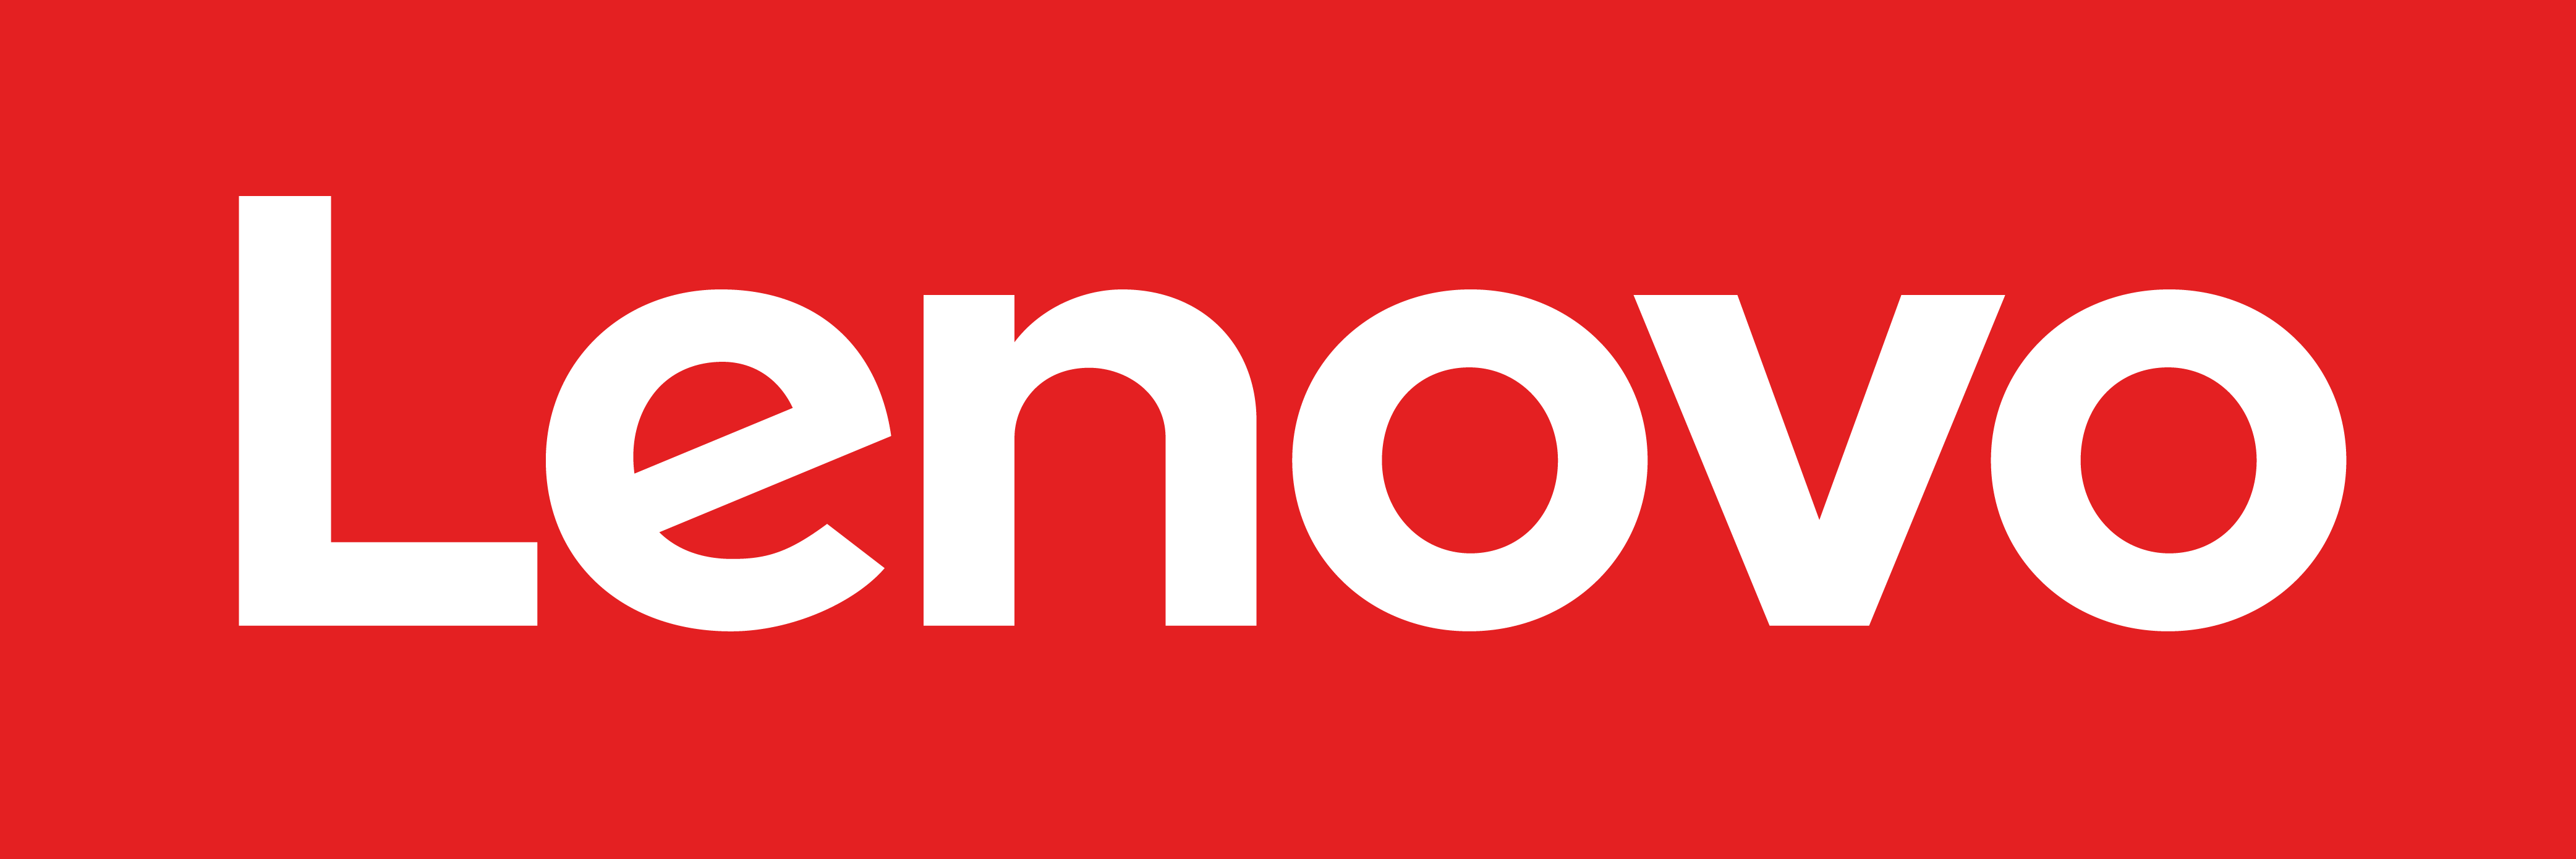 Lenovo_2015.png